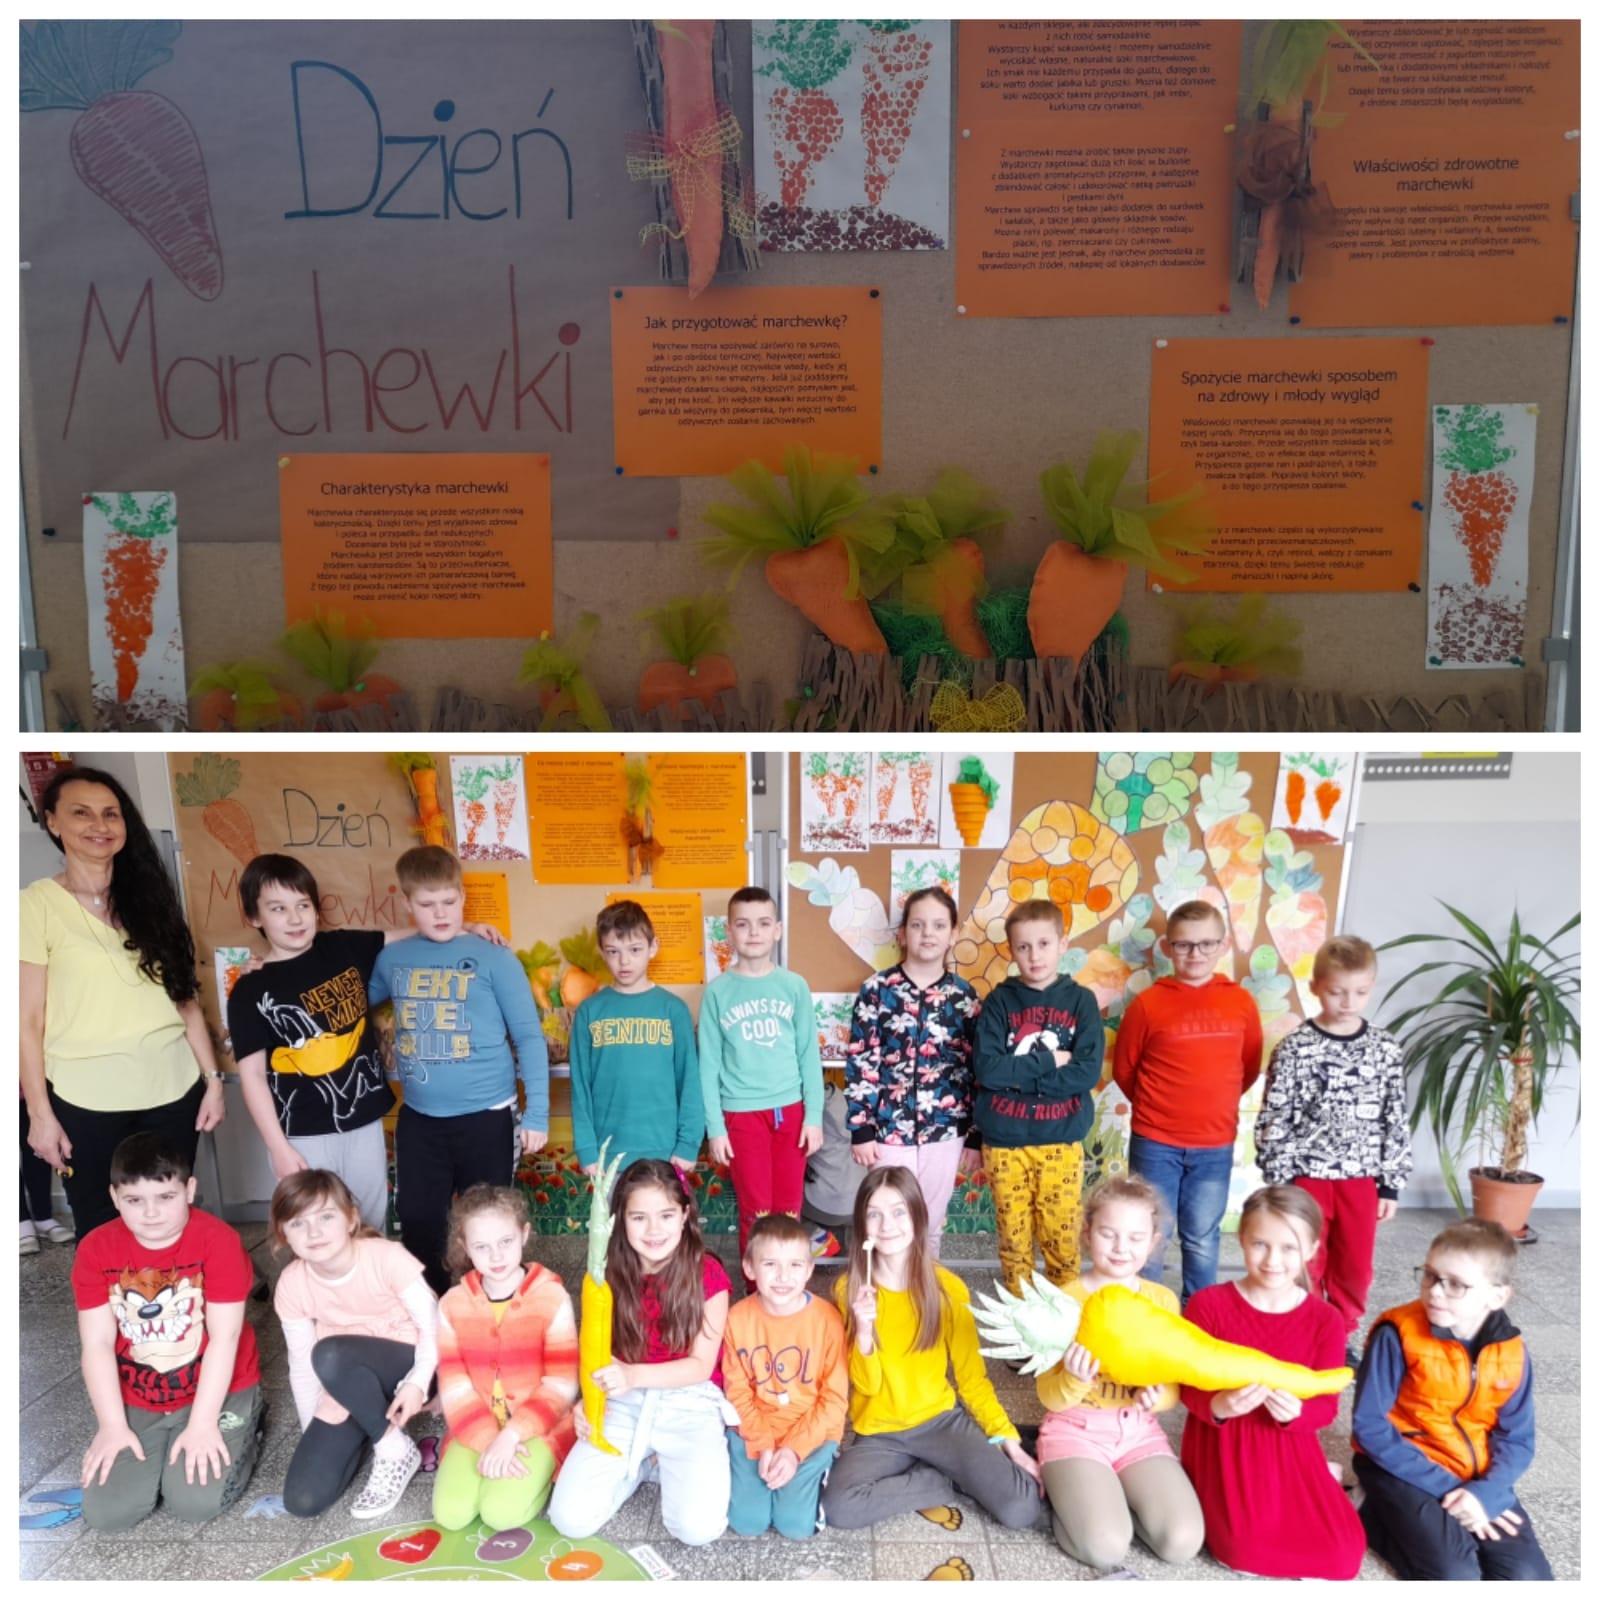 Dzieci pokazują wykonane przez siebie kartonowe marchewki